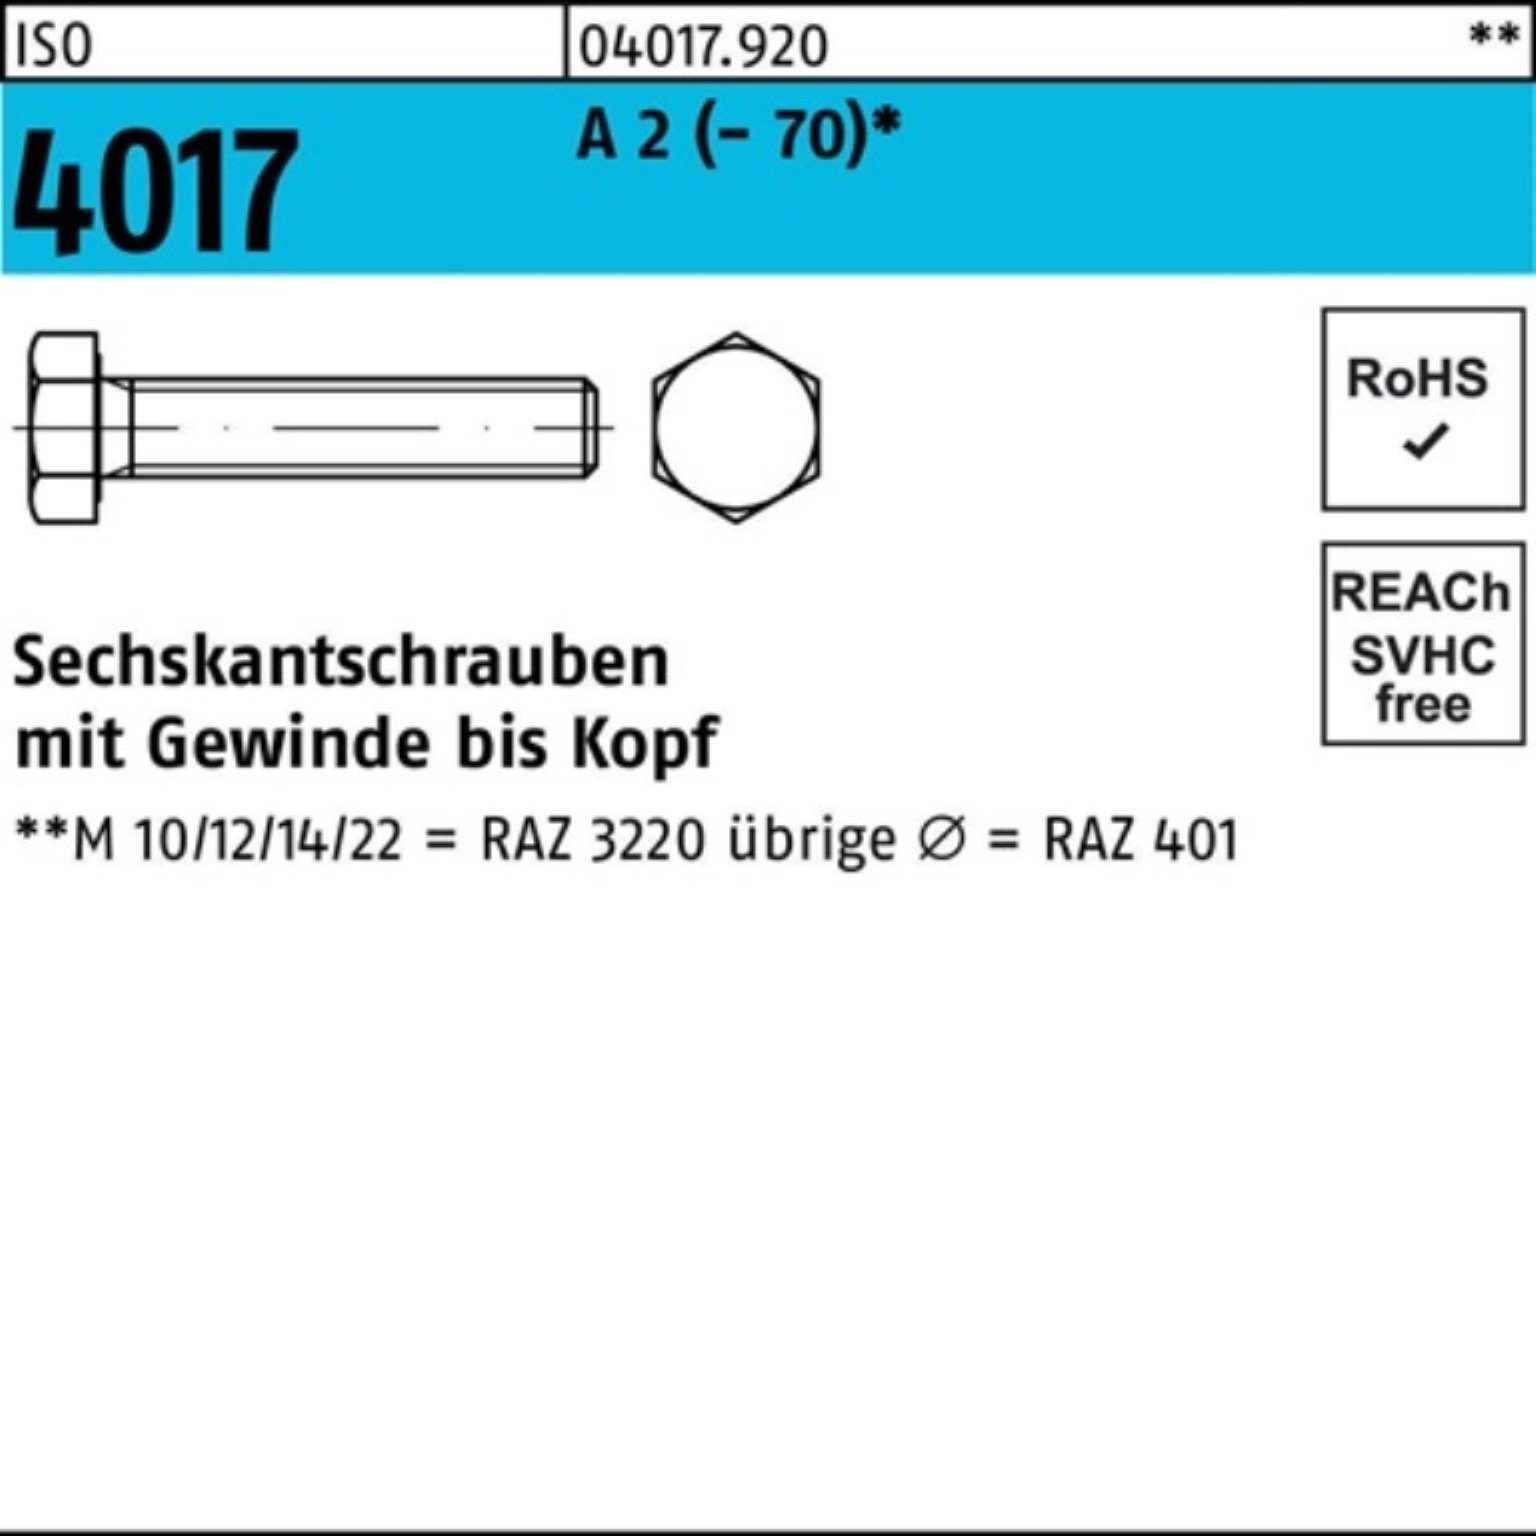 Bufab Sechskantschraube 100er Pack Sechskantschraube ISO 4017 VG M12x 120 A 2 (70) 25 Stück | Schrauben